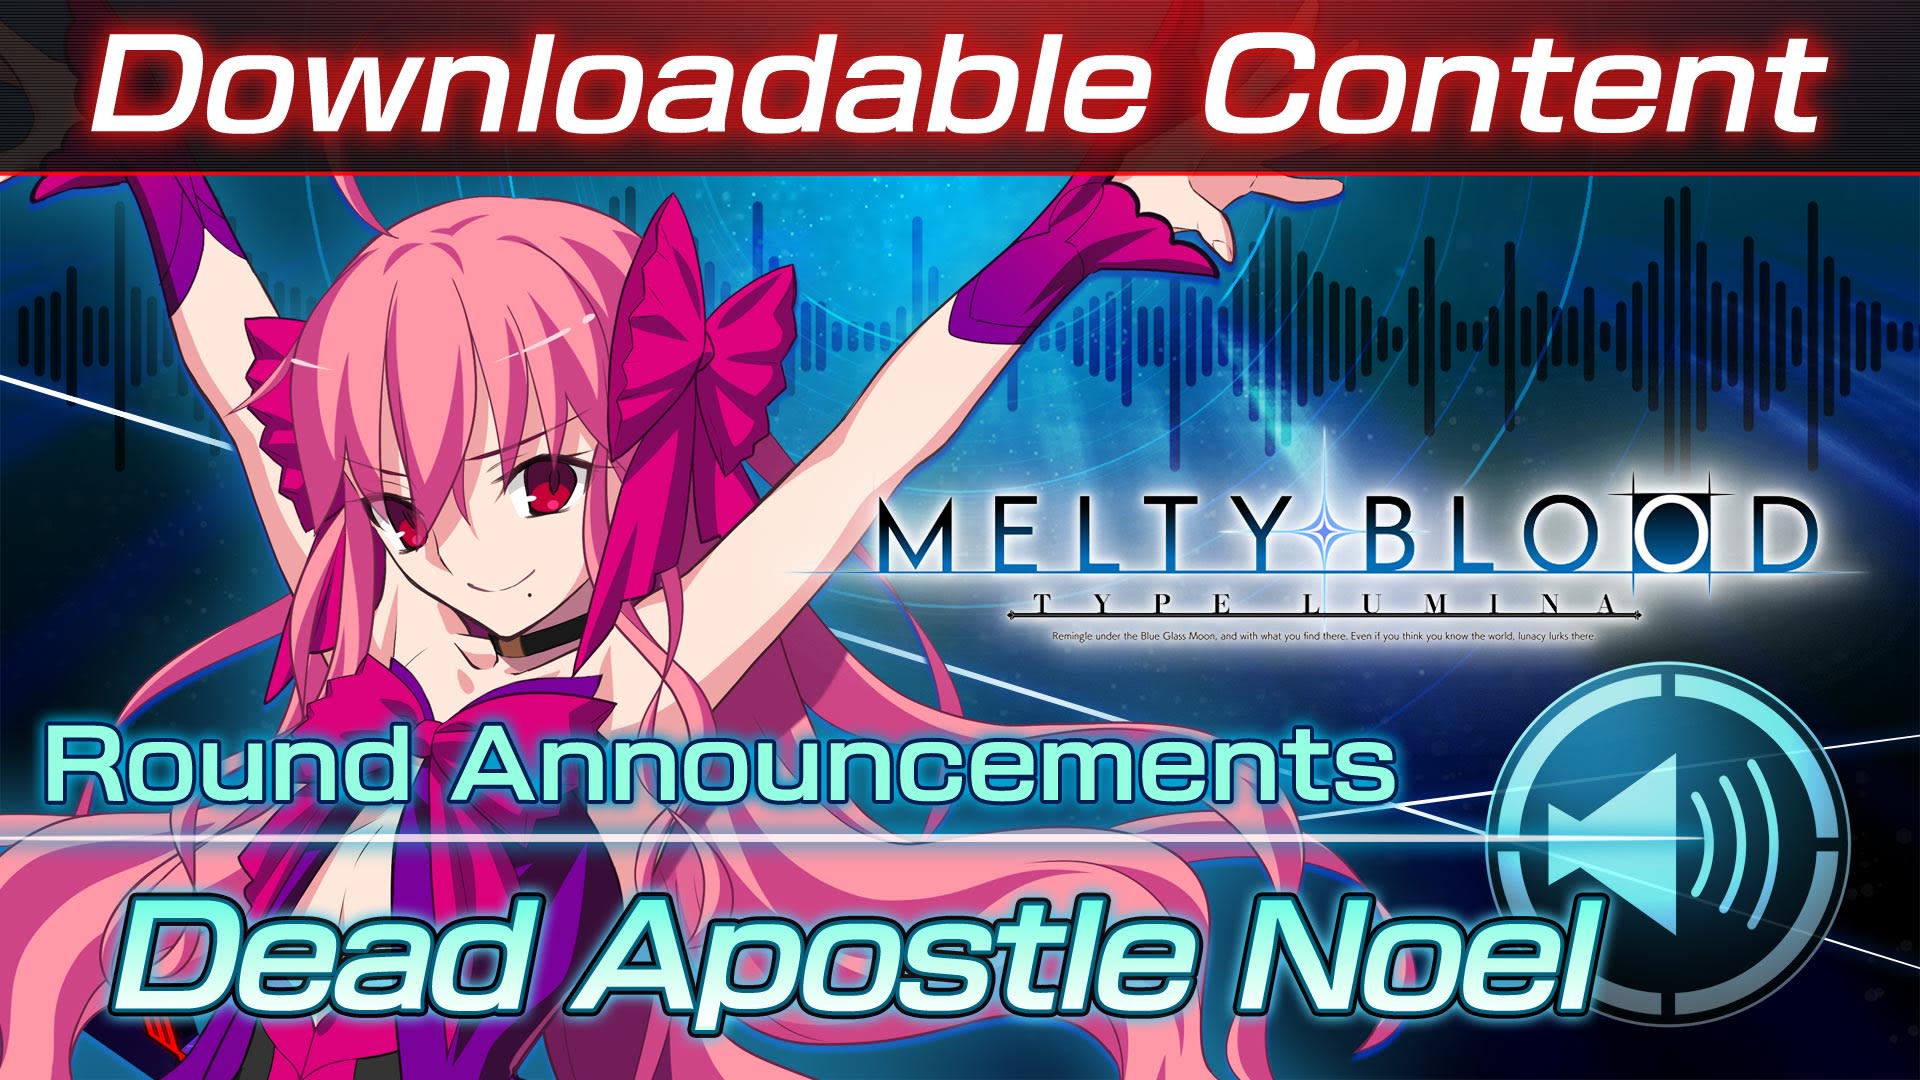 DLC: Dead Apostle Noel Round Announcements 1